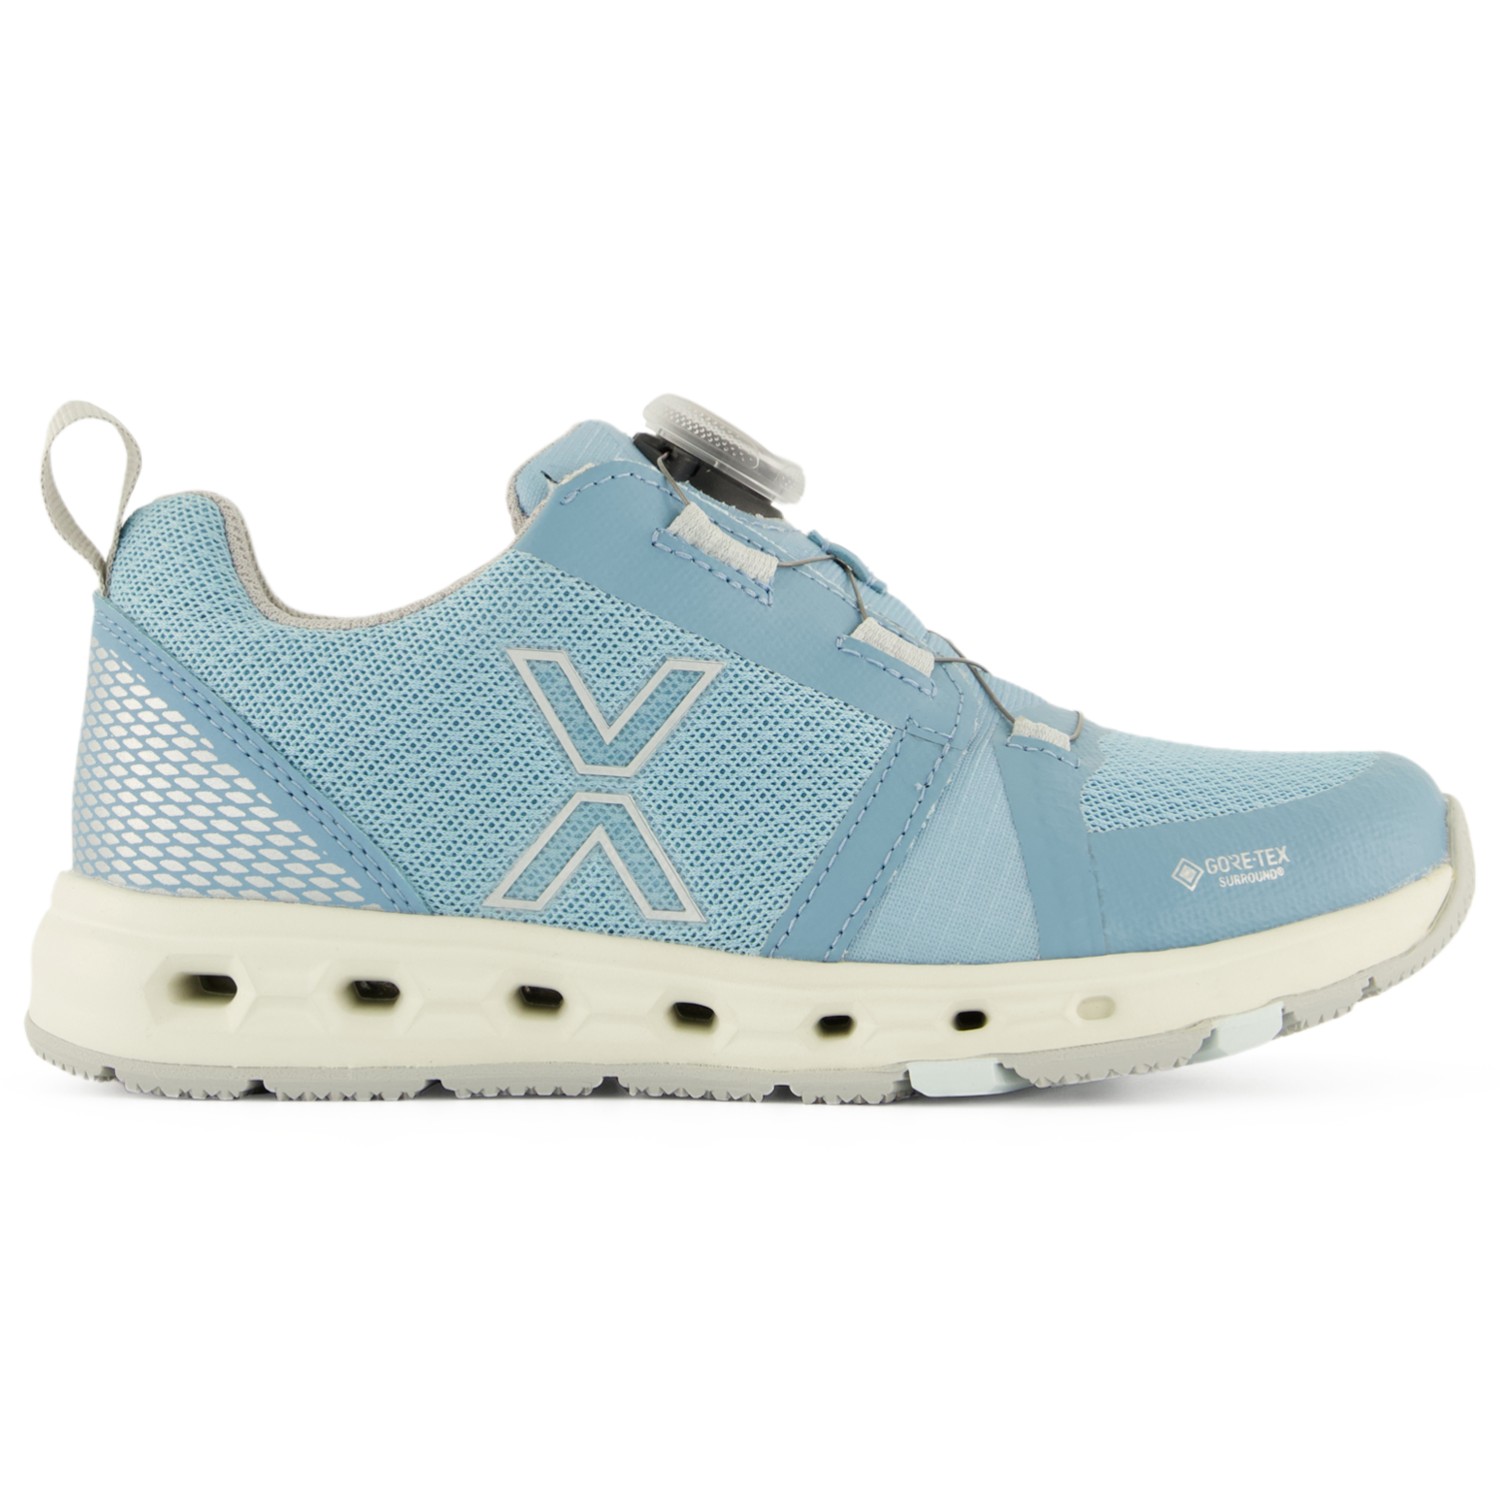 Повседневная обувь Vado Kid's Air Low Boa GTX Surround, небесно голубой